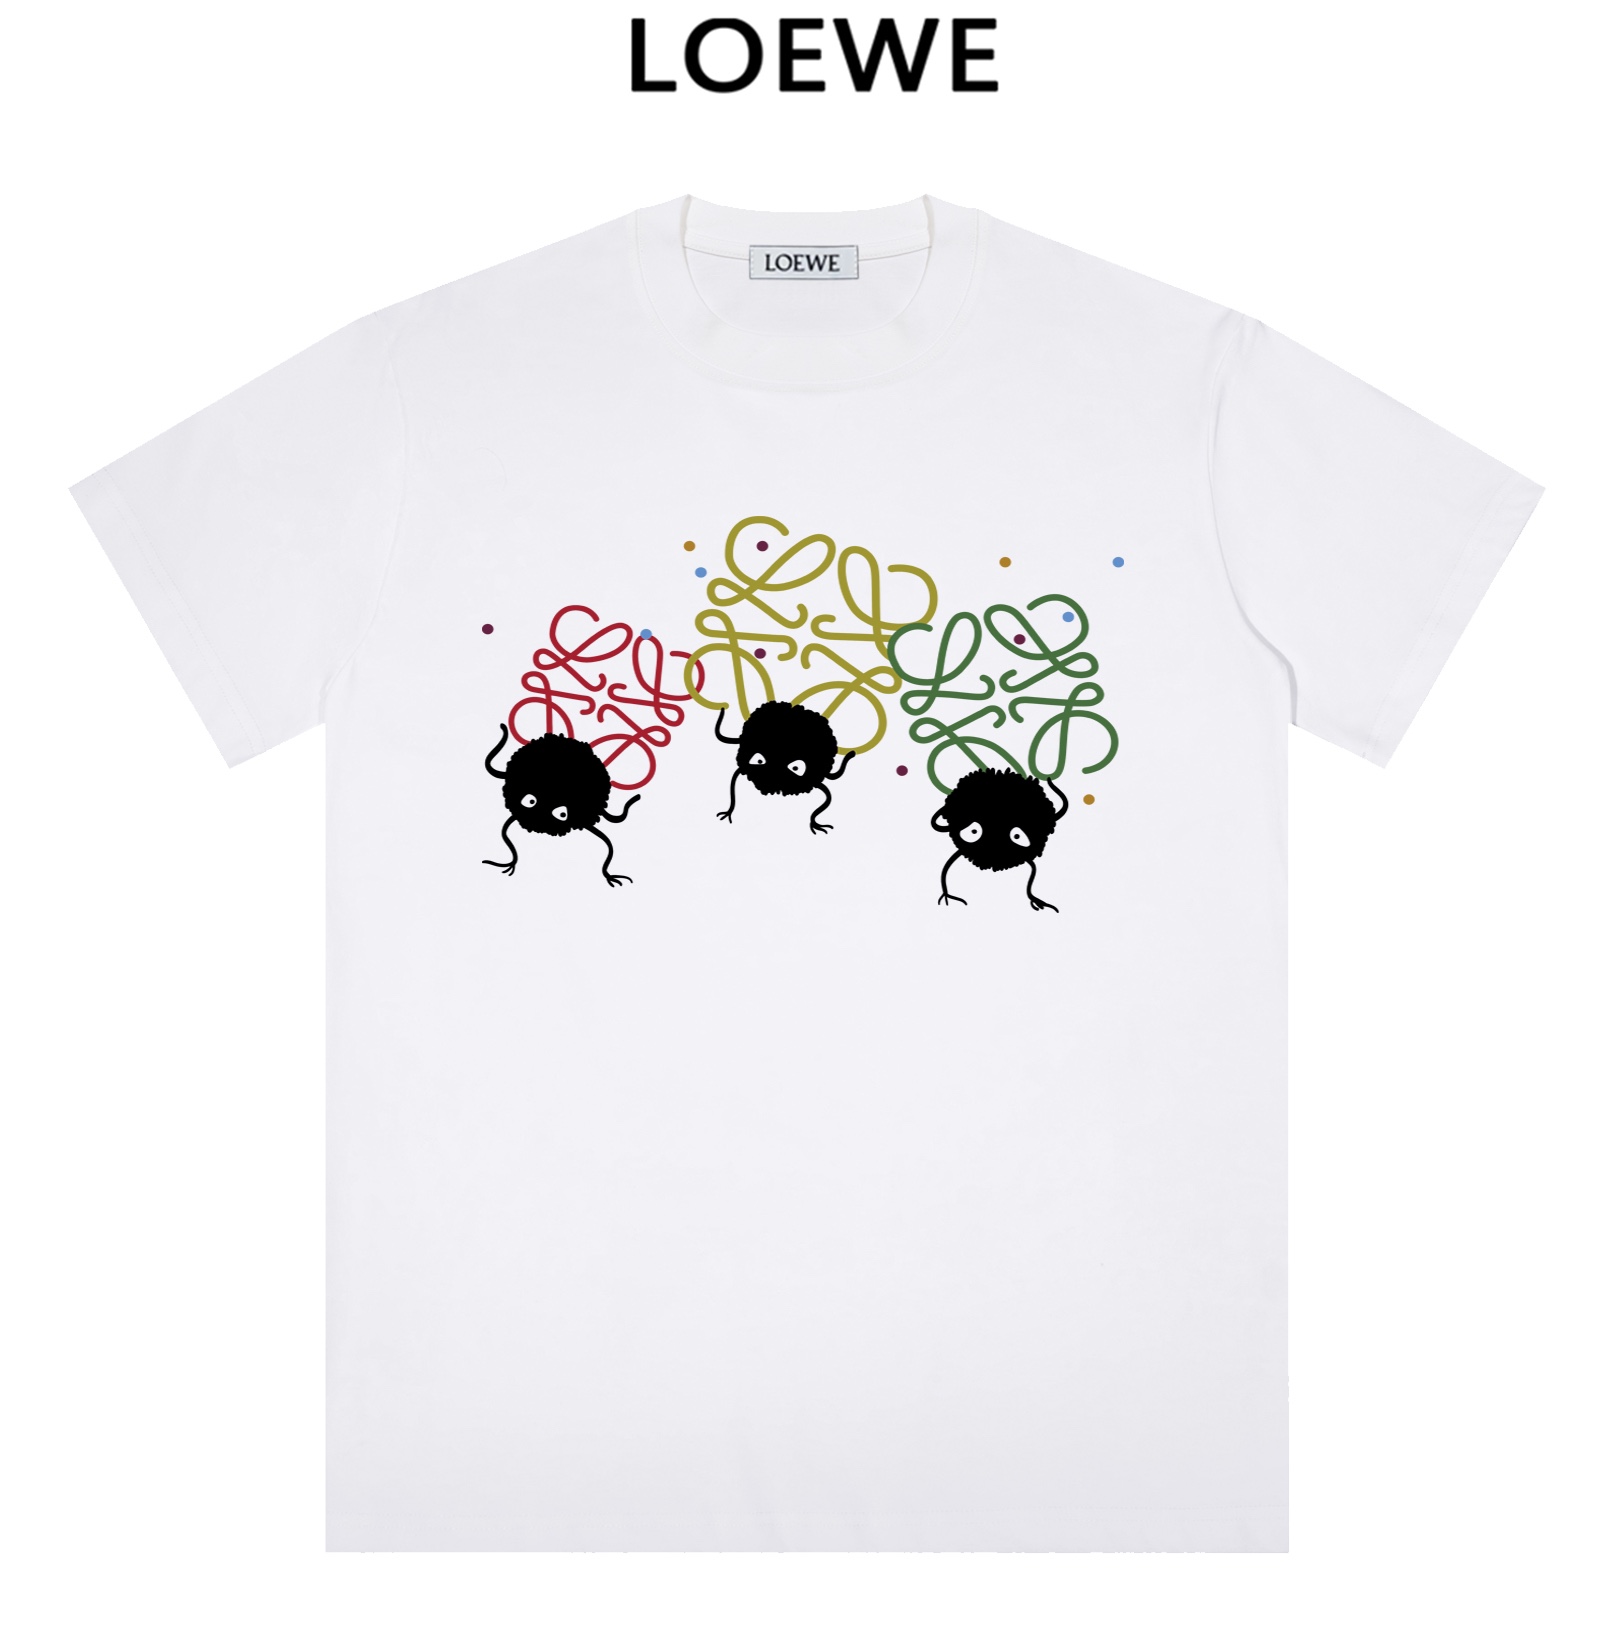 Loewe Clothing T-Shirt Top Fake Designer
 Printing Short Sleeve